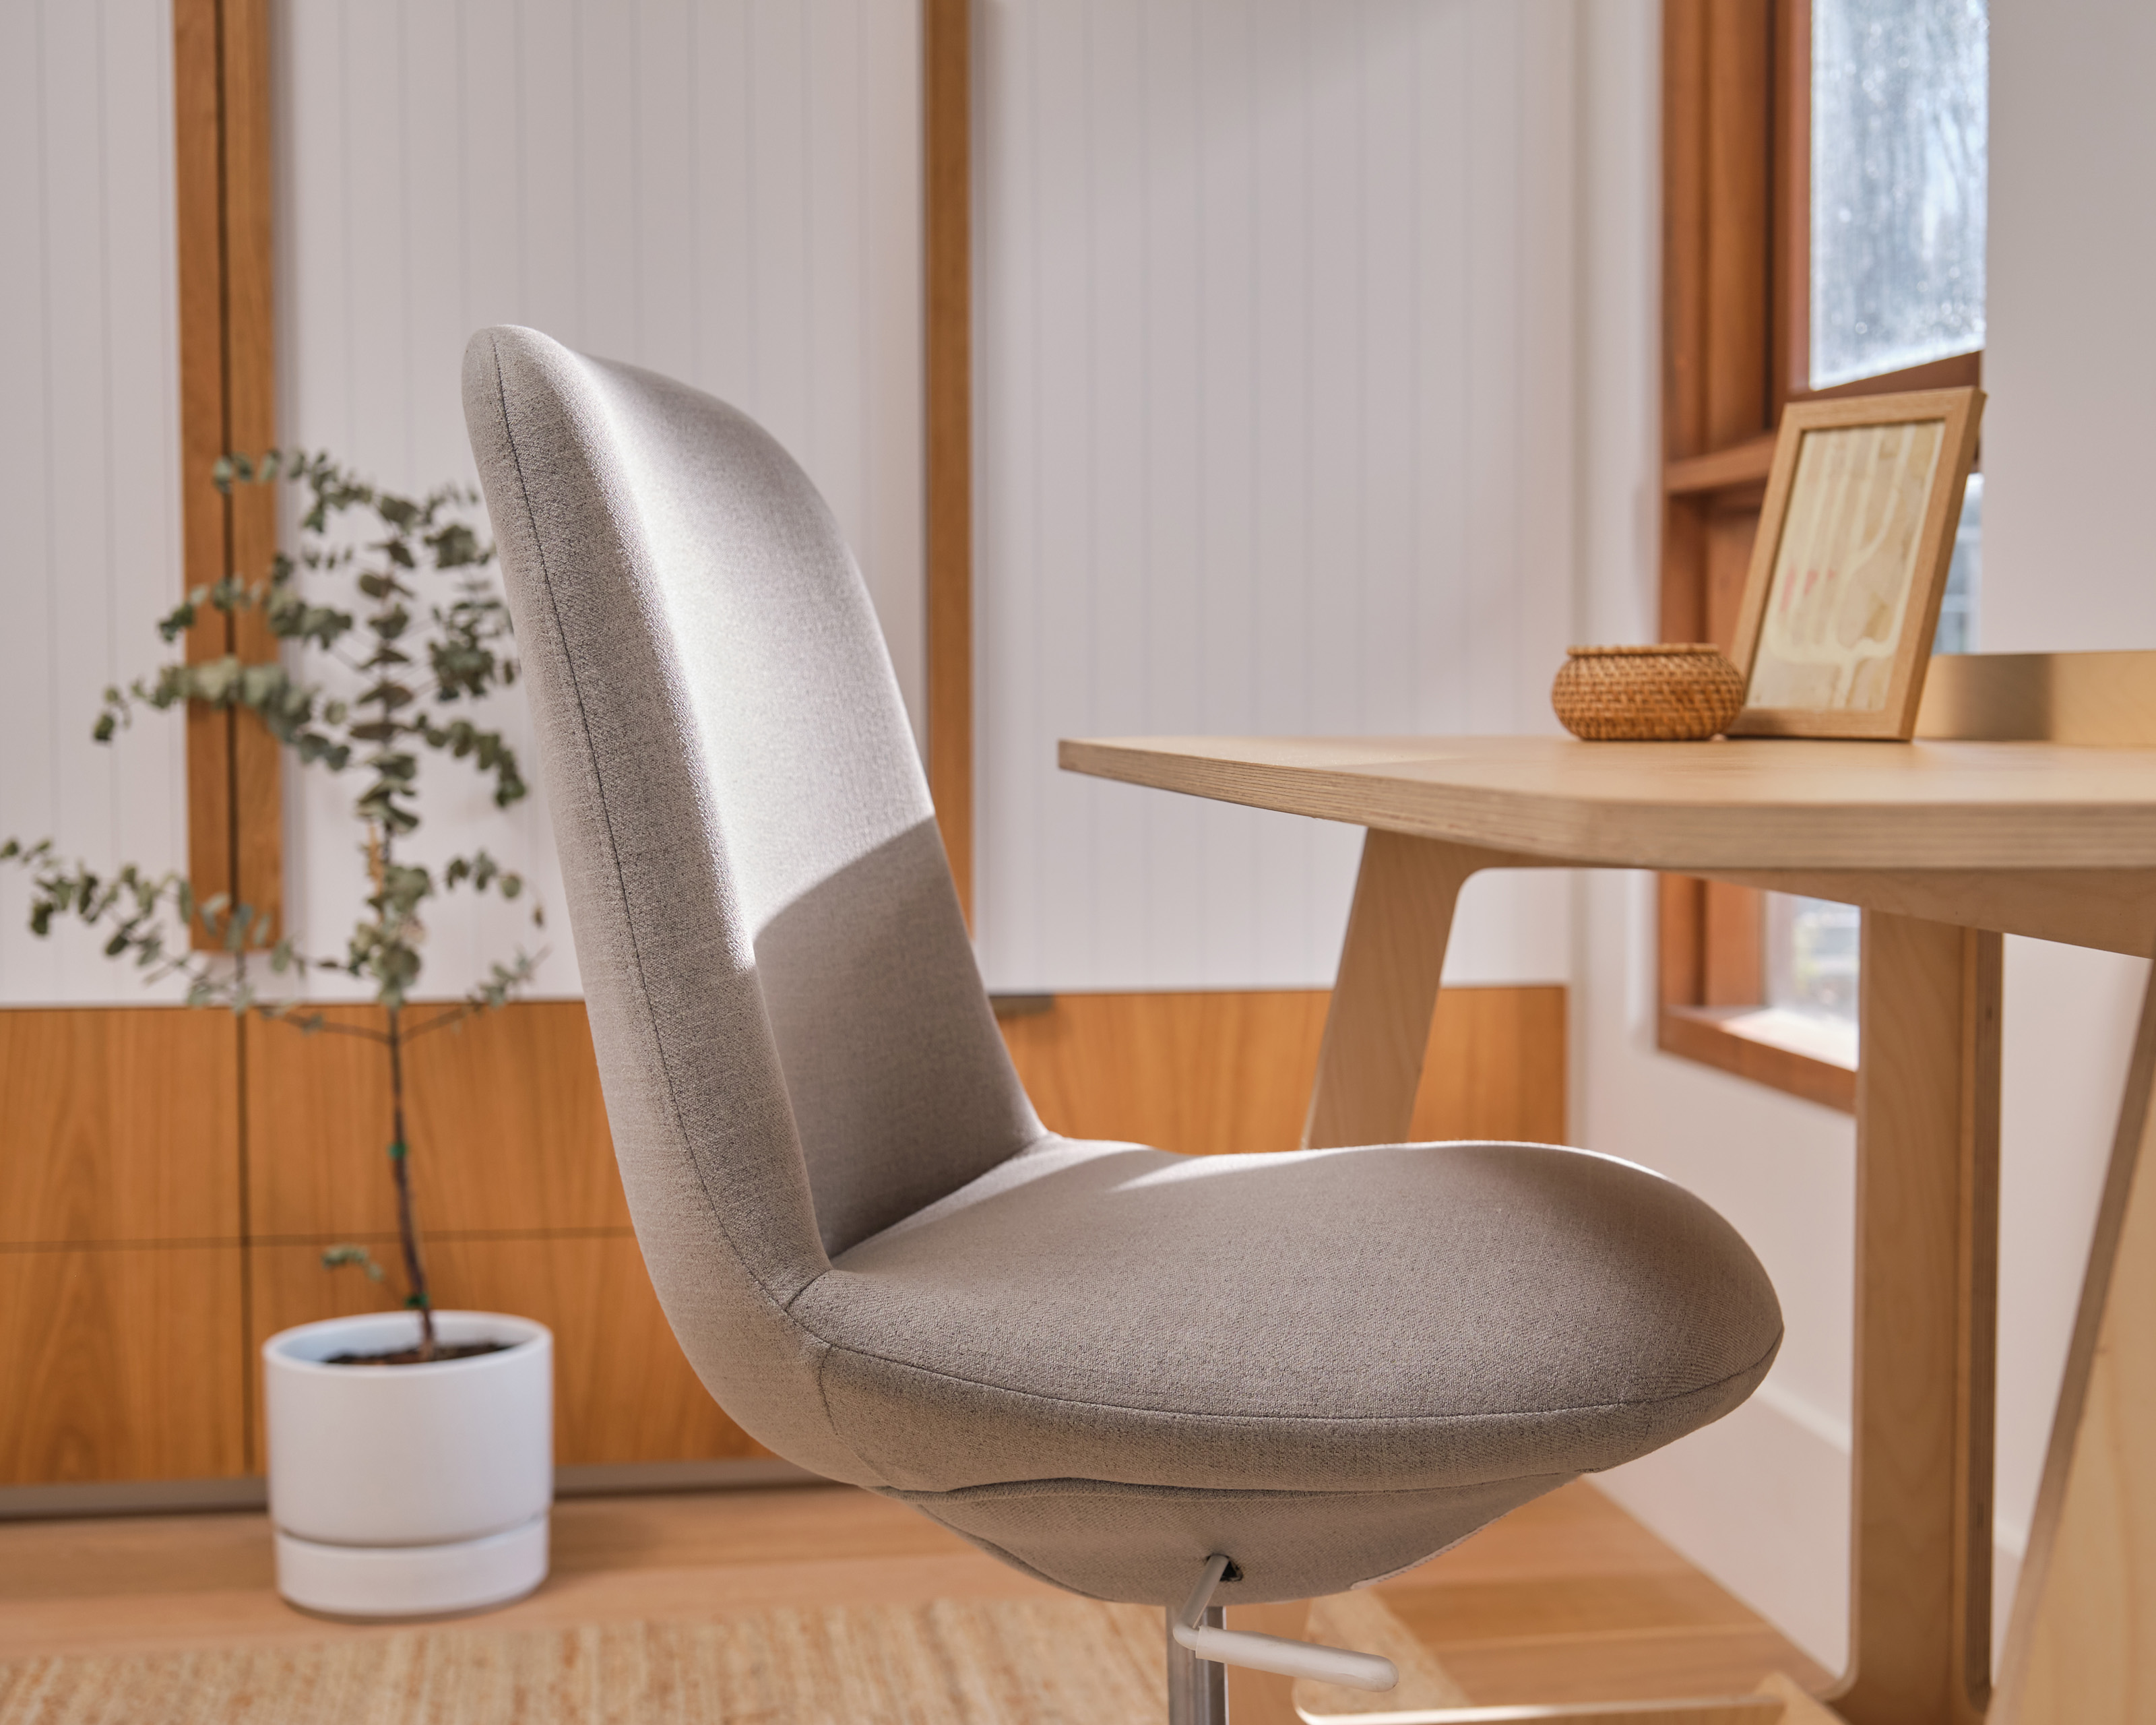 The Koala Upright Home Office Chair | Ain't No Slouching | Koala AU